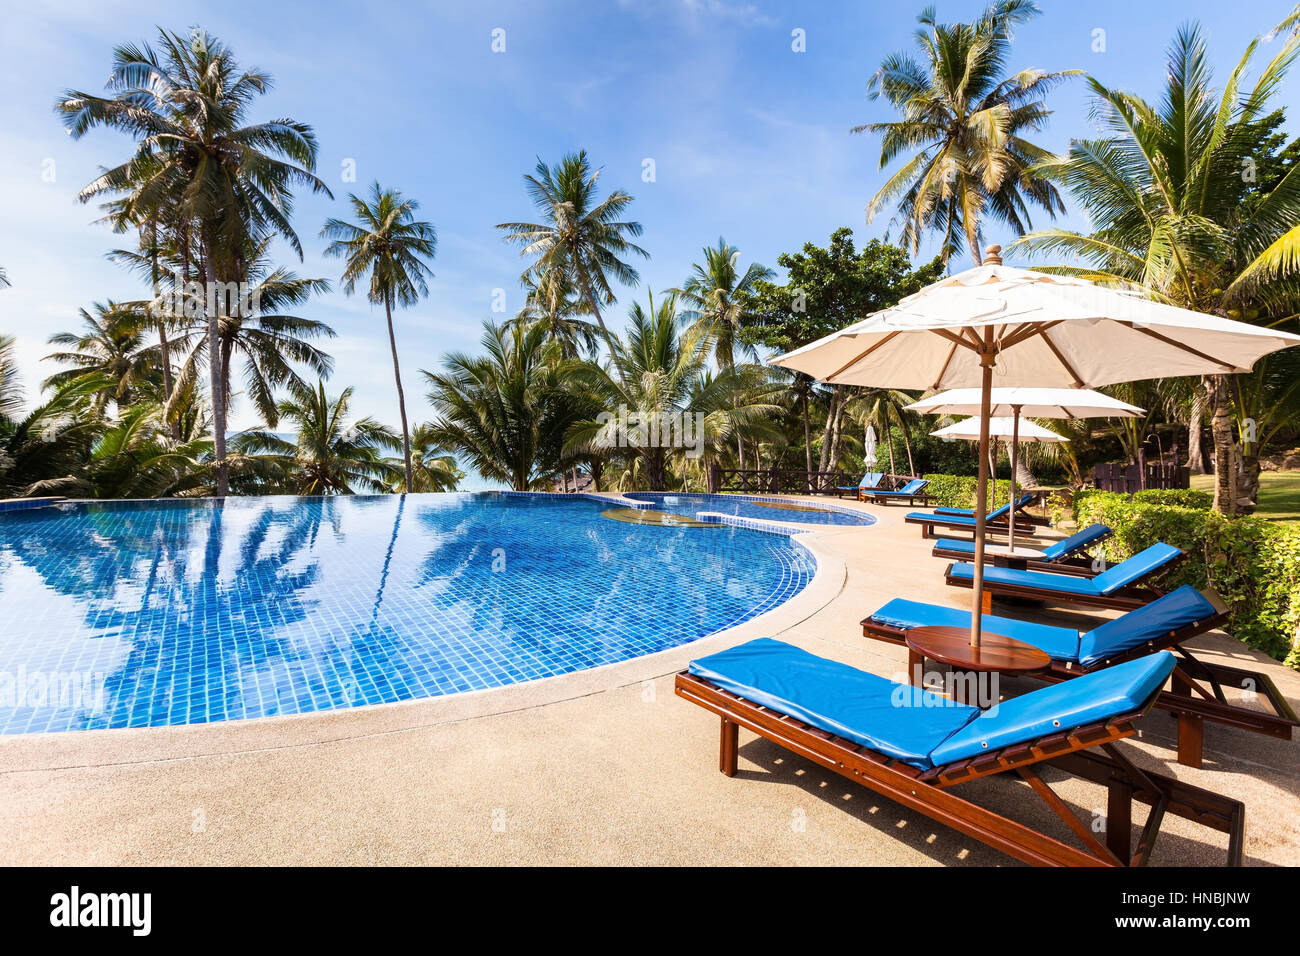 Belle tropical beach front hotel hotel avec piscine, transats et palmiers au cours d'une chaude journée ensoleillée, destination paradisiaque pour les vacances Banque D'Images